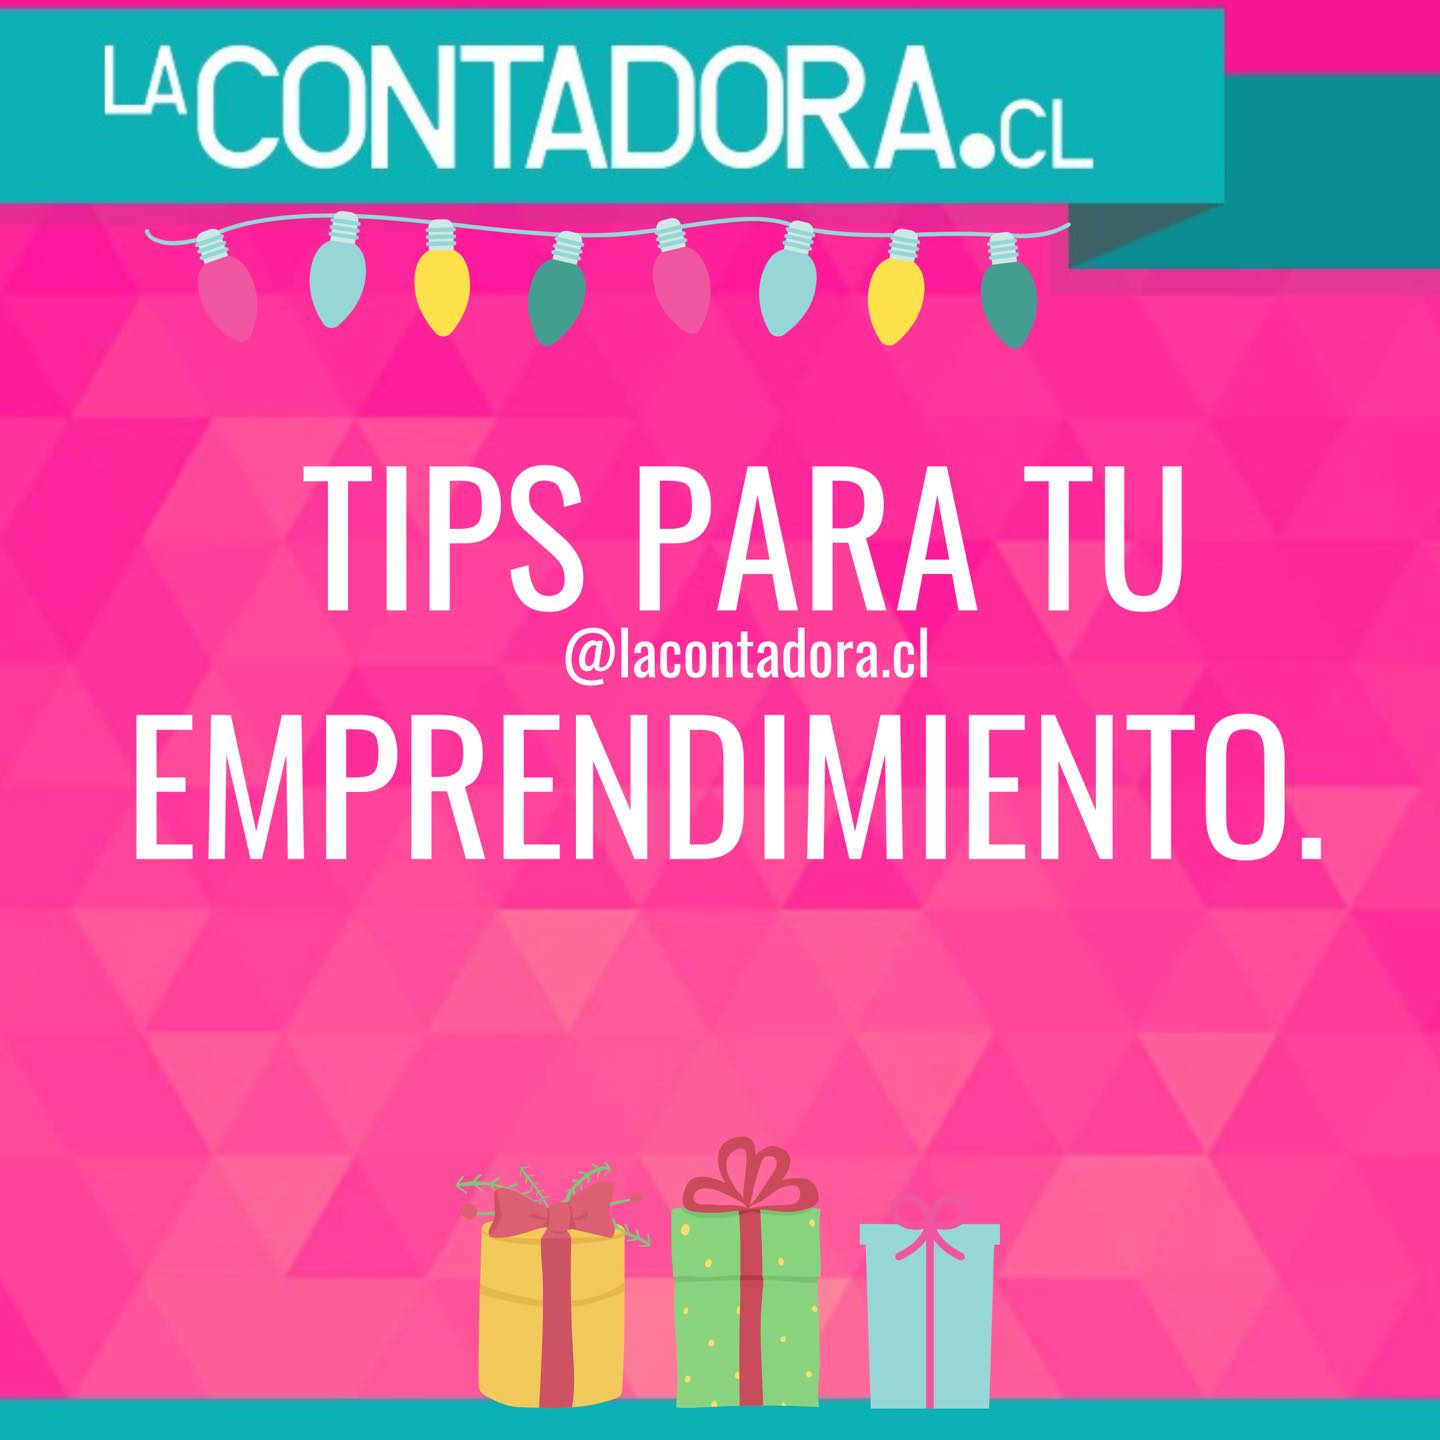 Tips para emprender. By LaContadora.cl